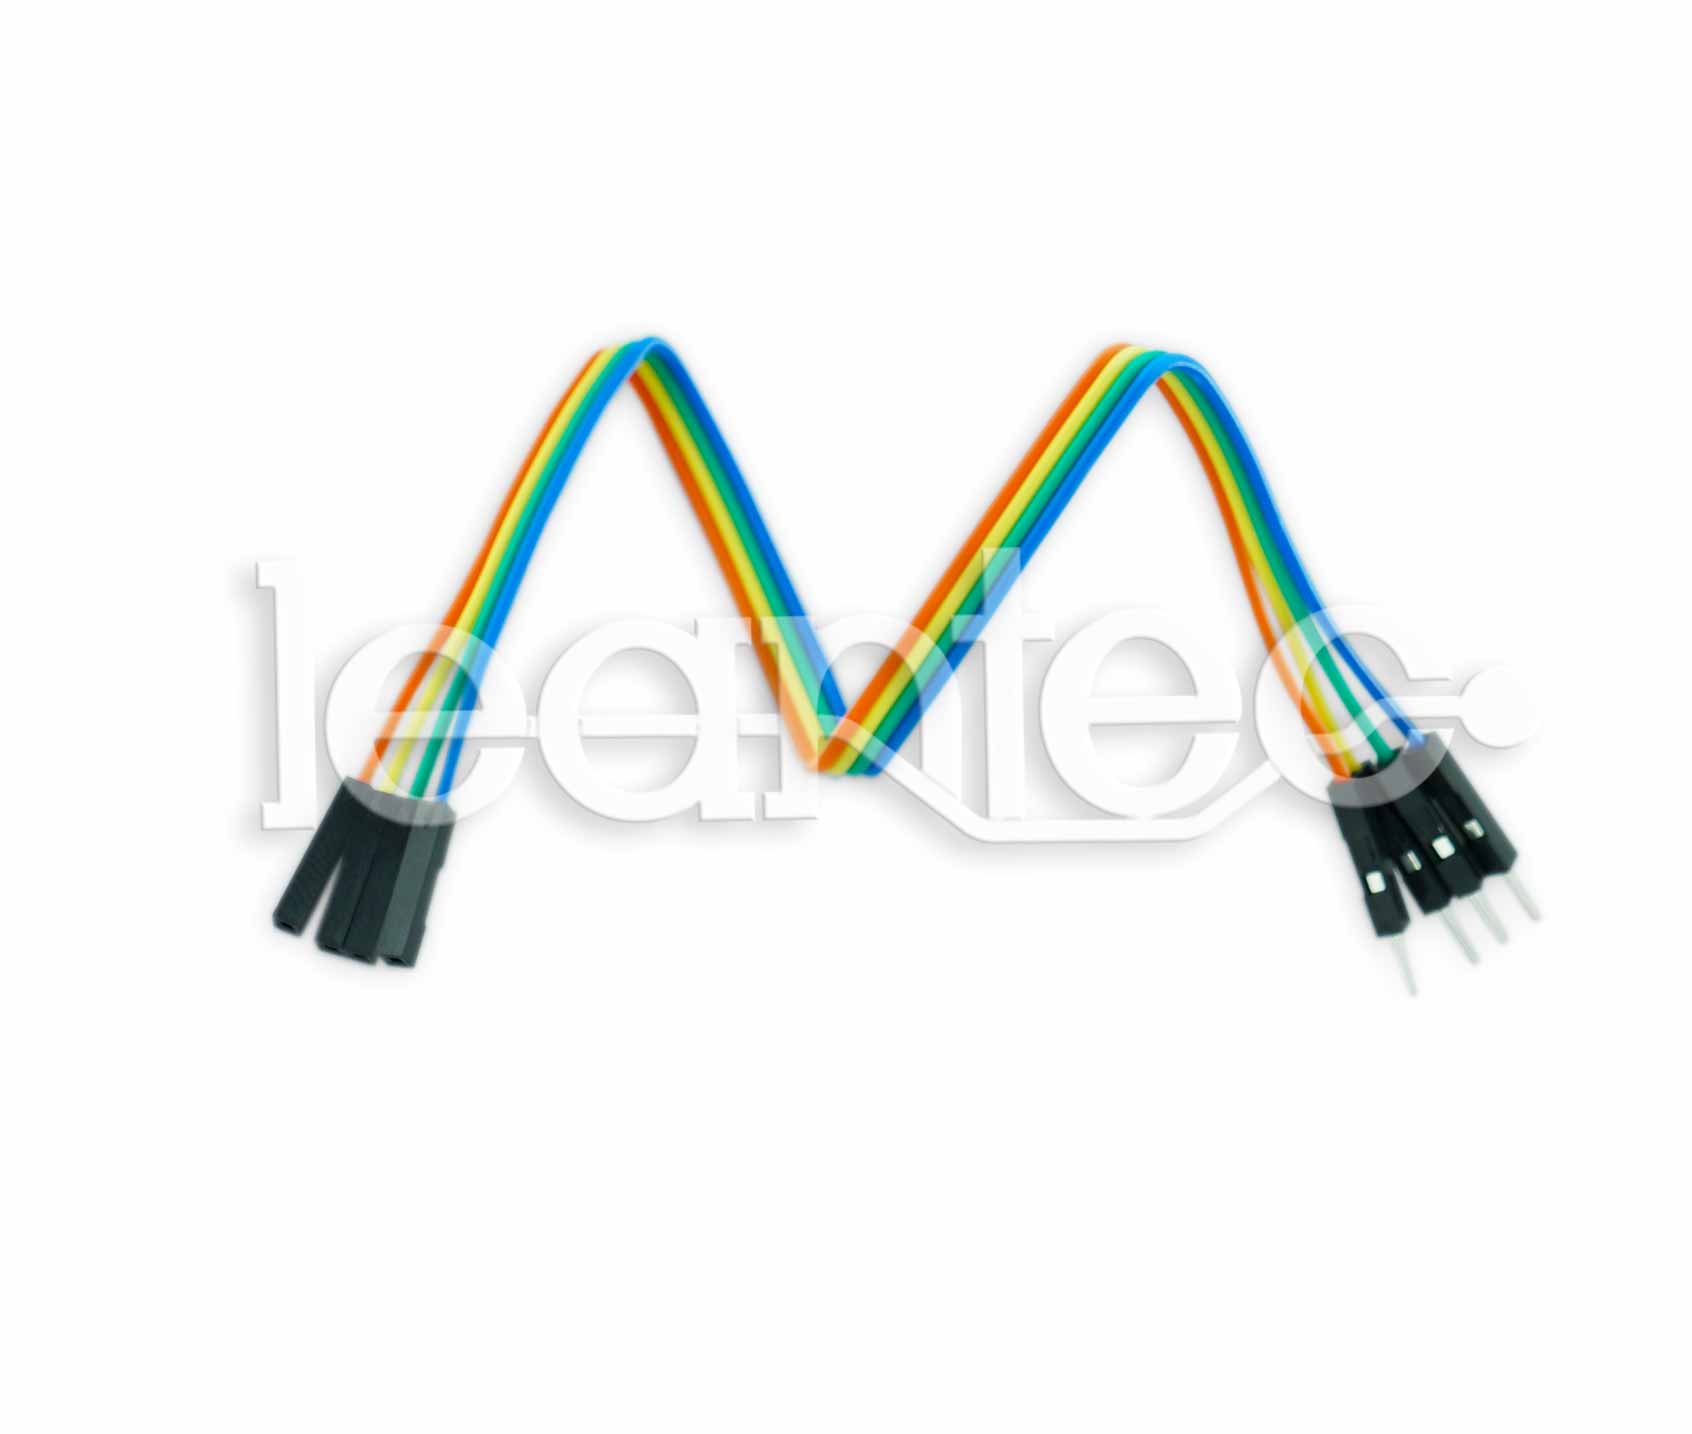 cables leantec